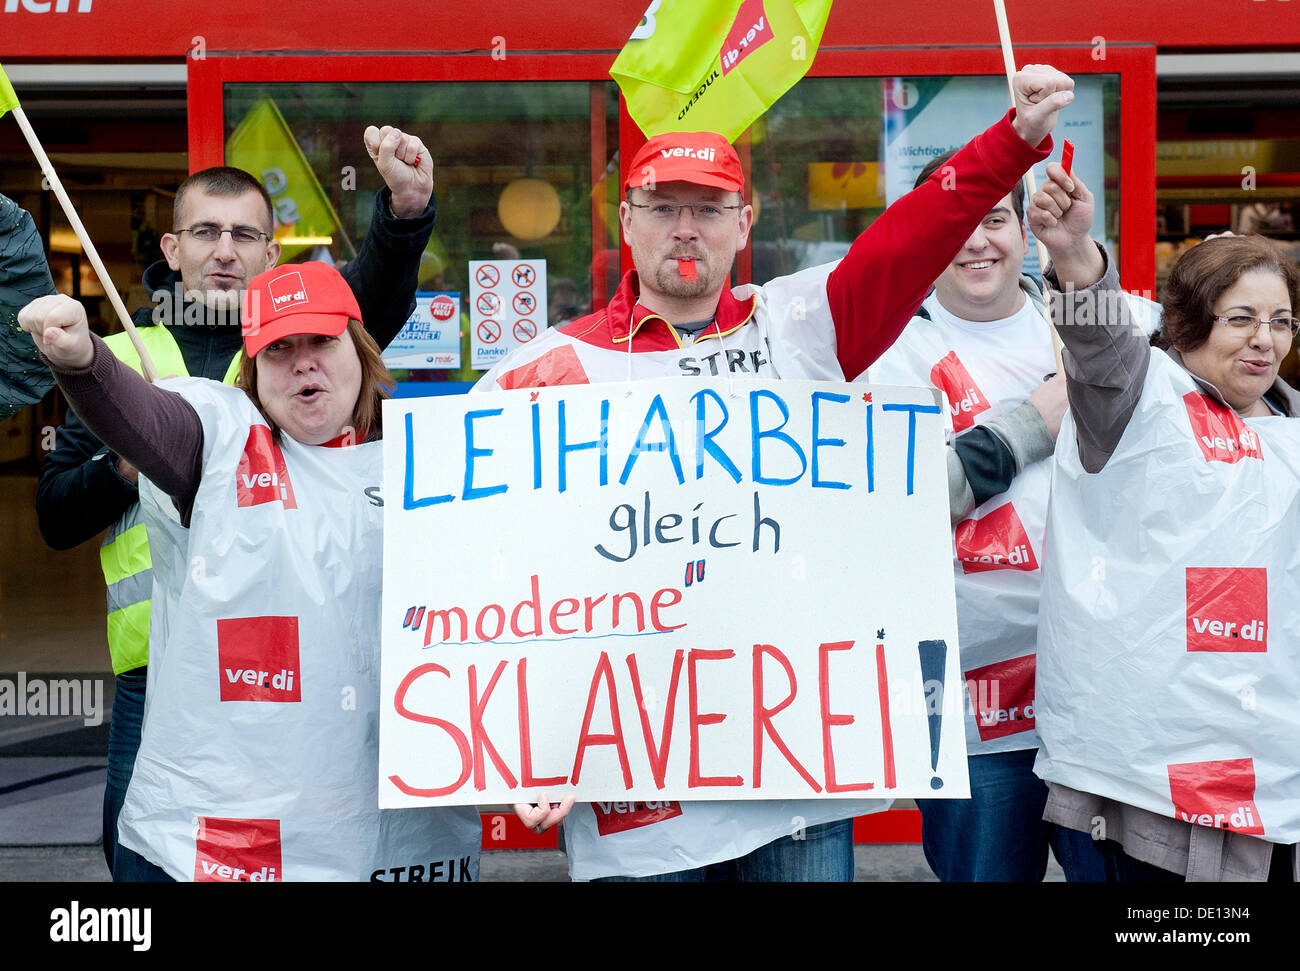 Schild "Leiharbeit Gleich moderne Sklaverei", Deutsch für "Zeitarbeit ist moderne Sklaverei", Tage-Streik gegen den Einsatz von Stockfoto